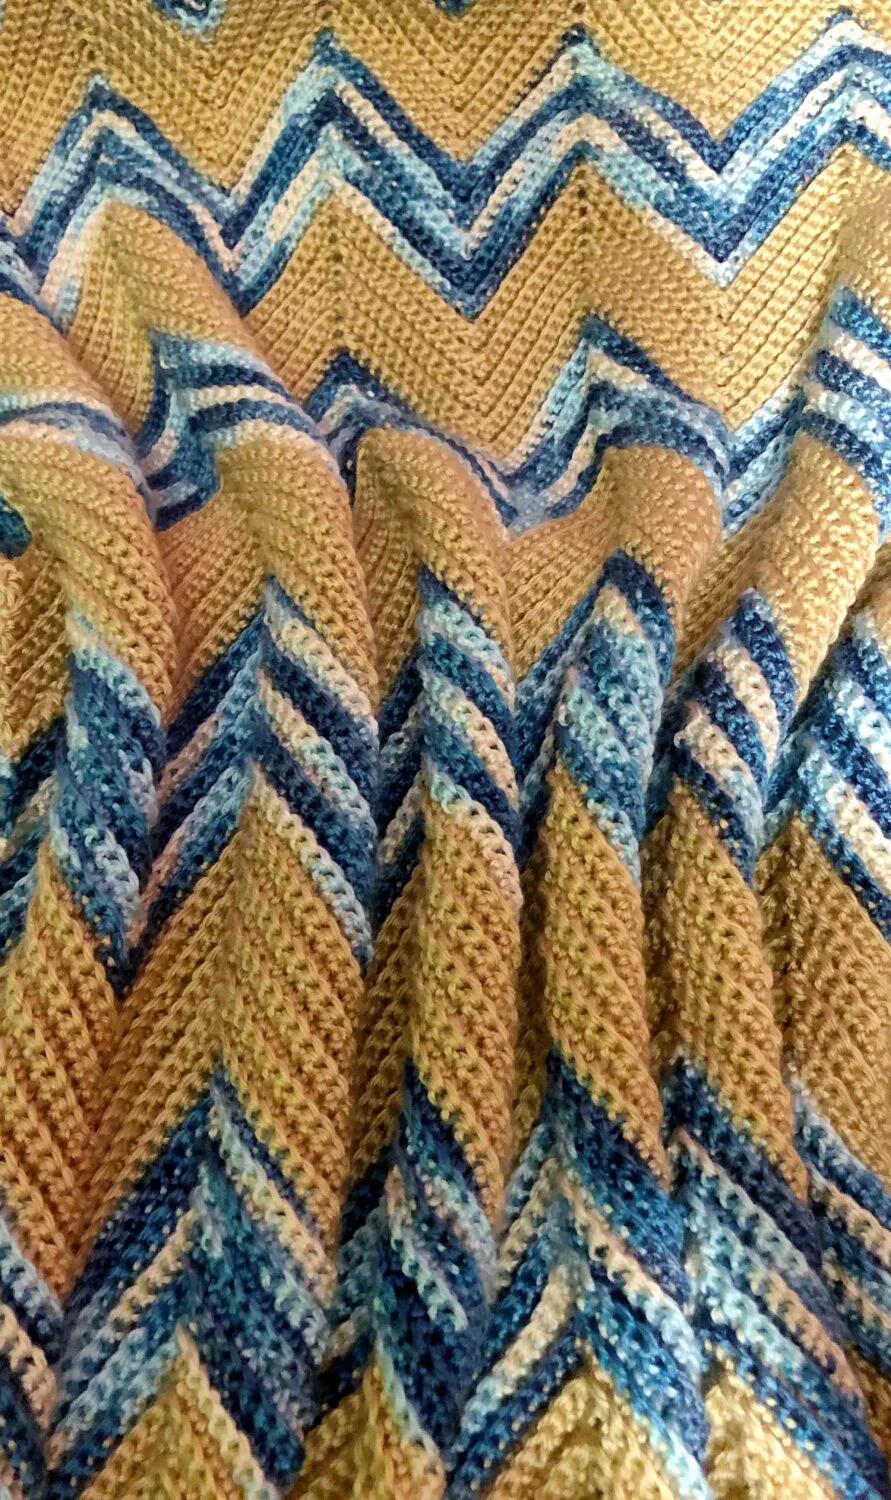 easy crochet blanket pattern